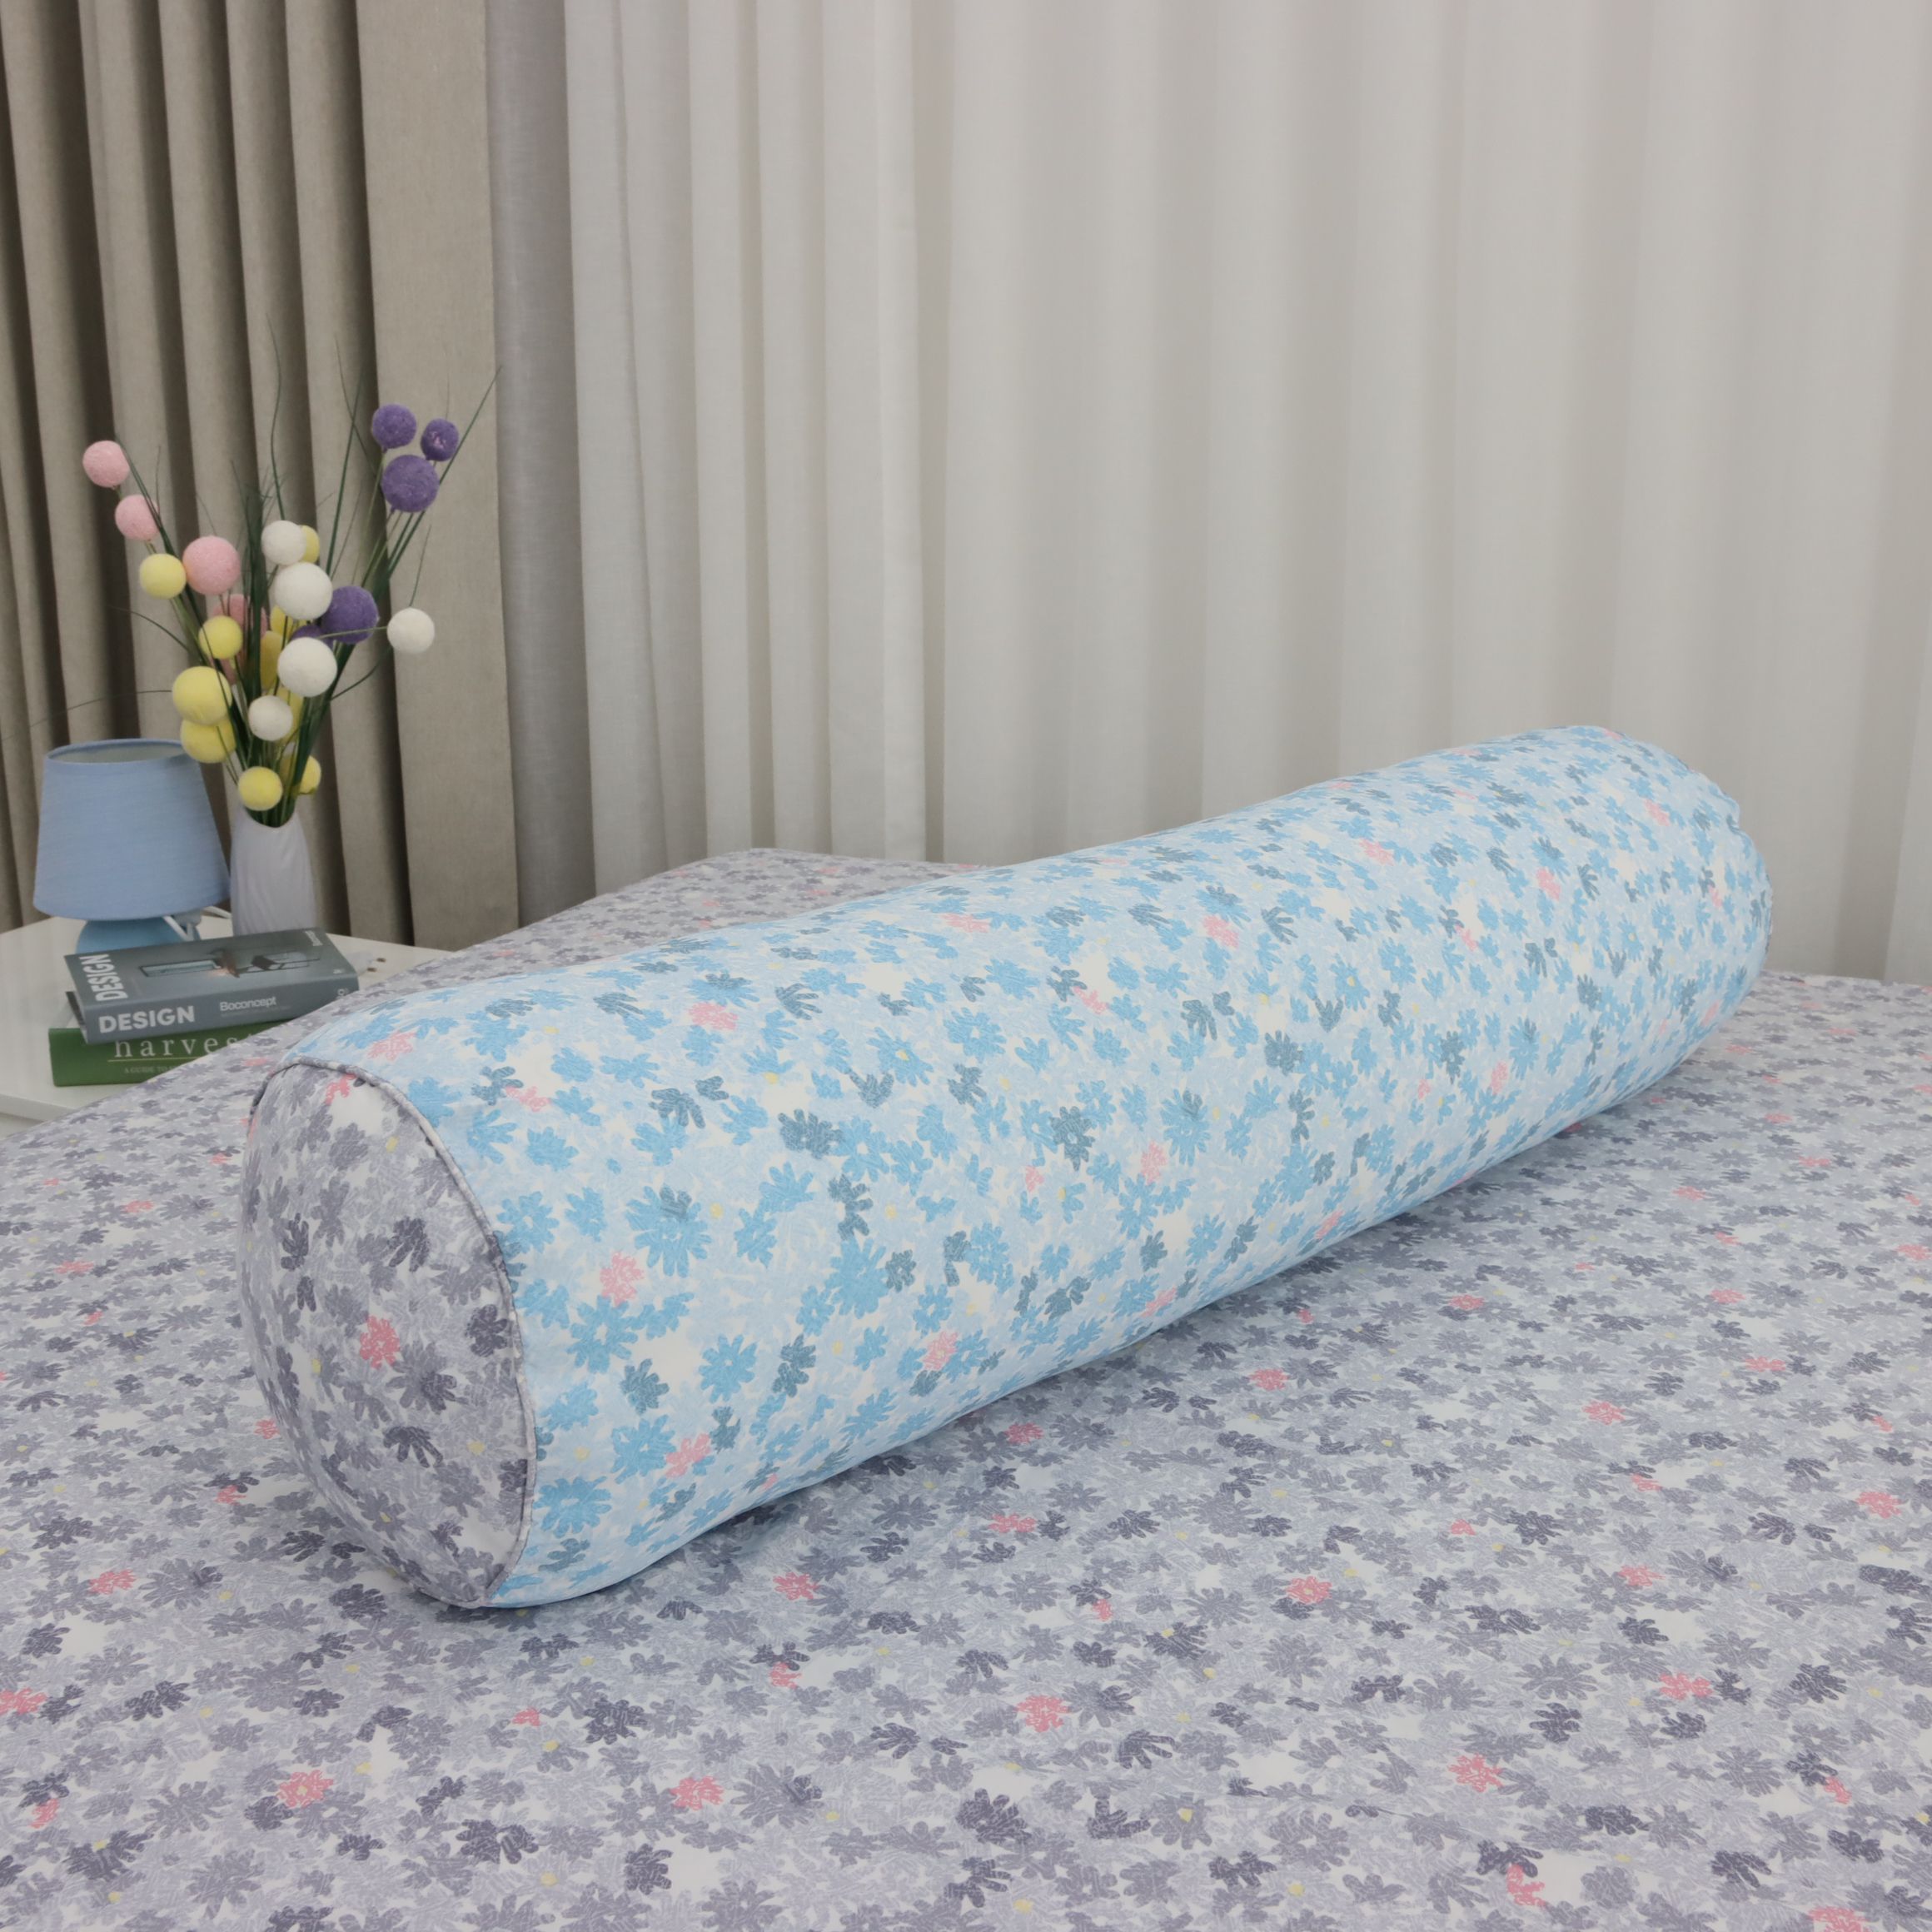 Vỏ Gối Ôm Hàn Quốc K-Bedding by Everon chất vải MicroTencel 80x100cm KTMP